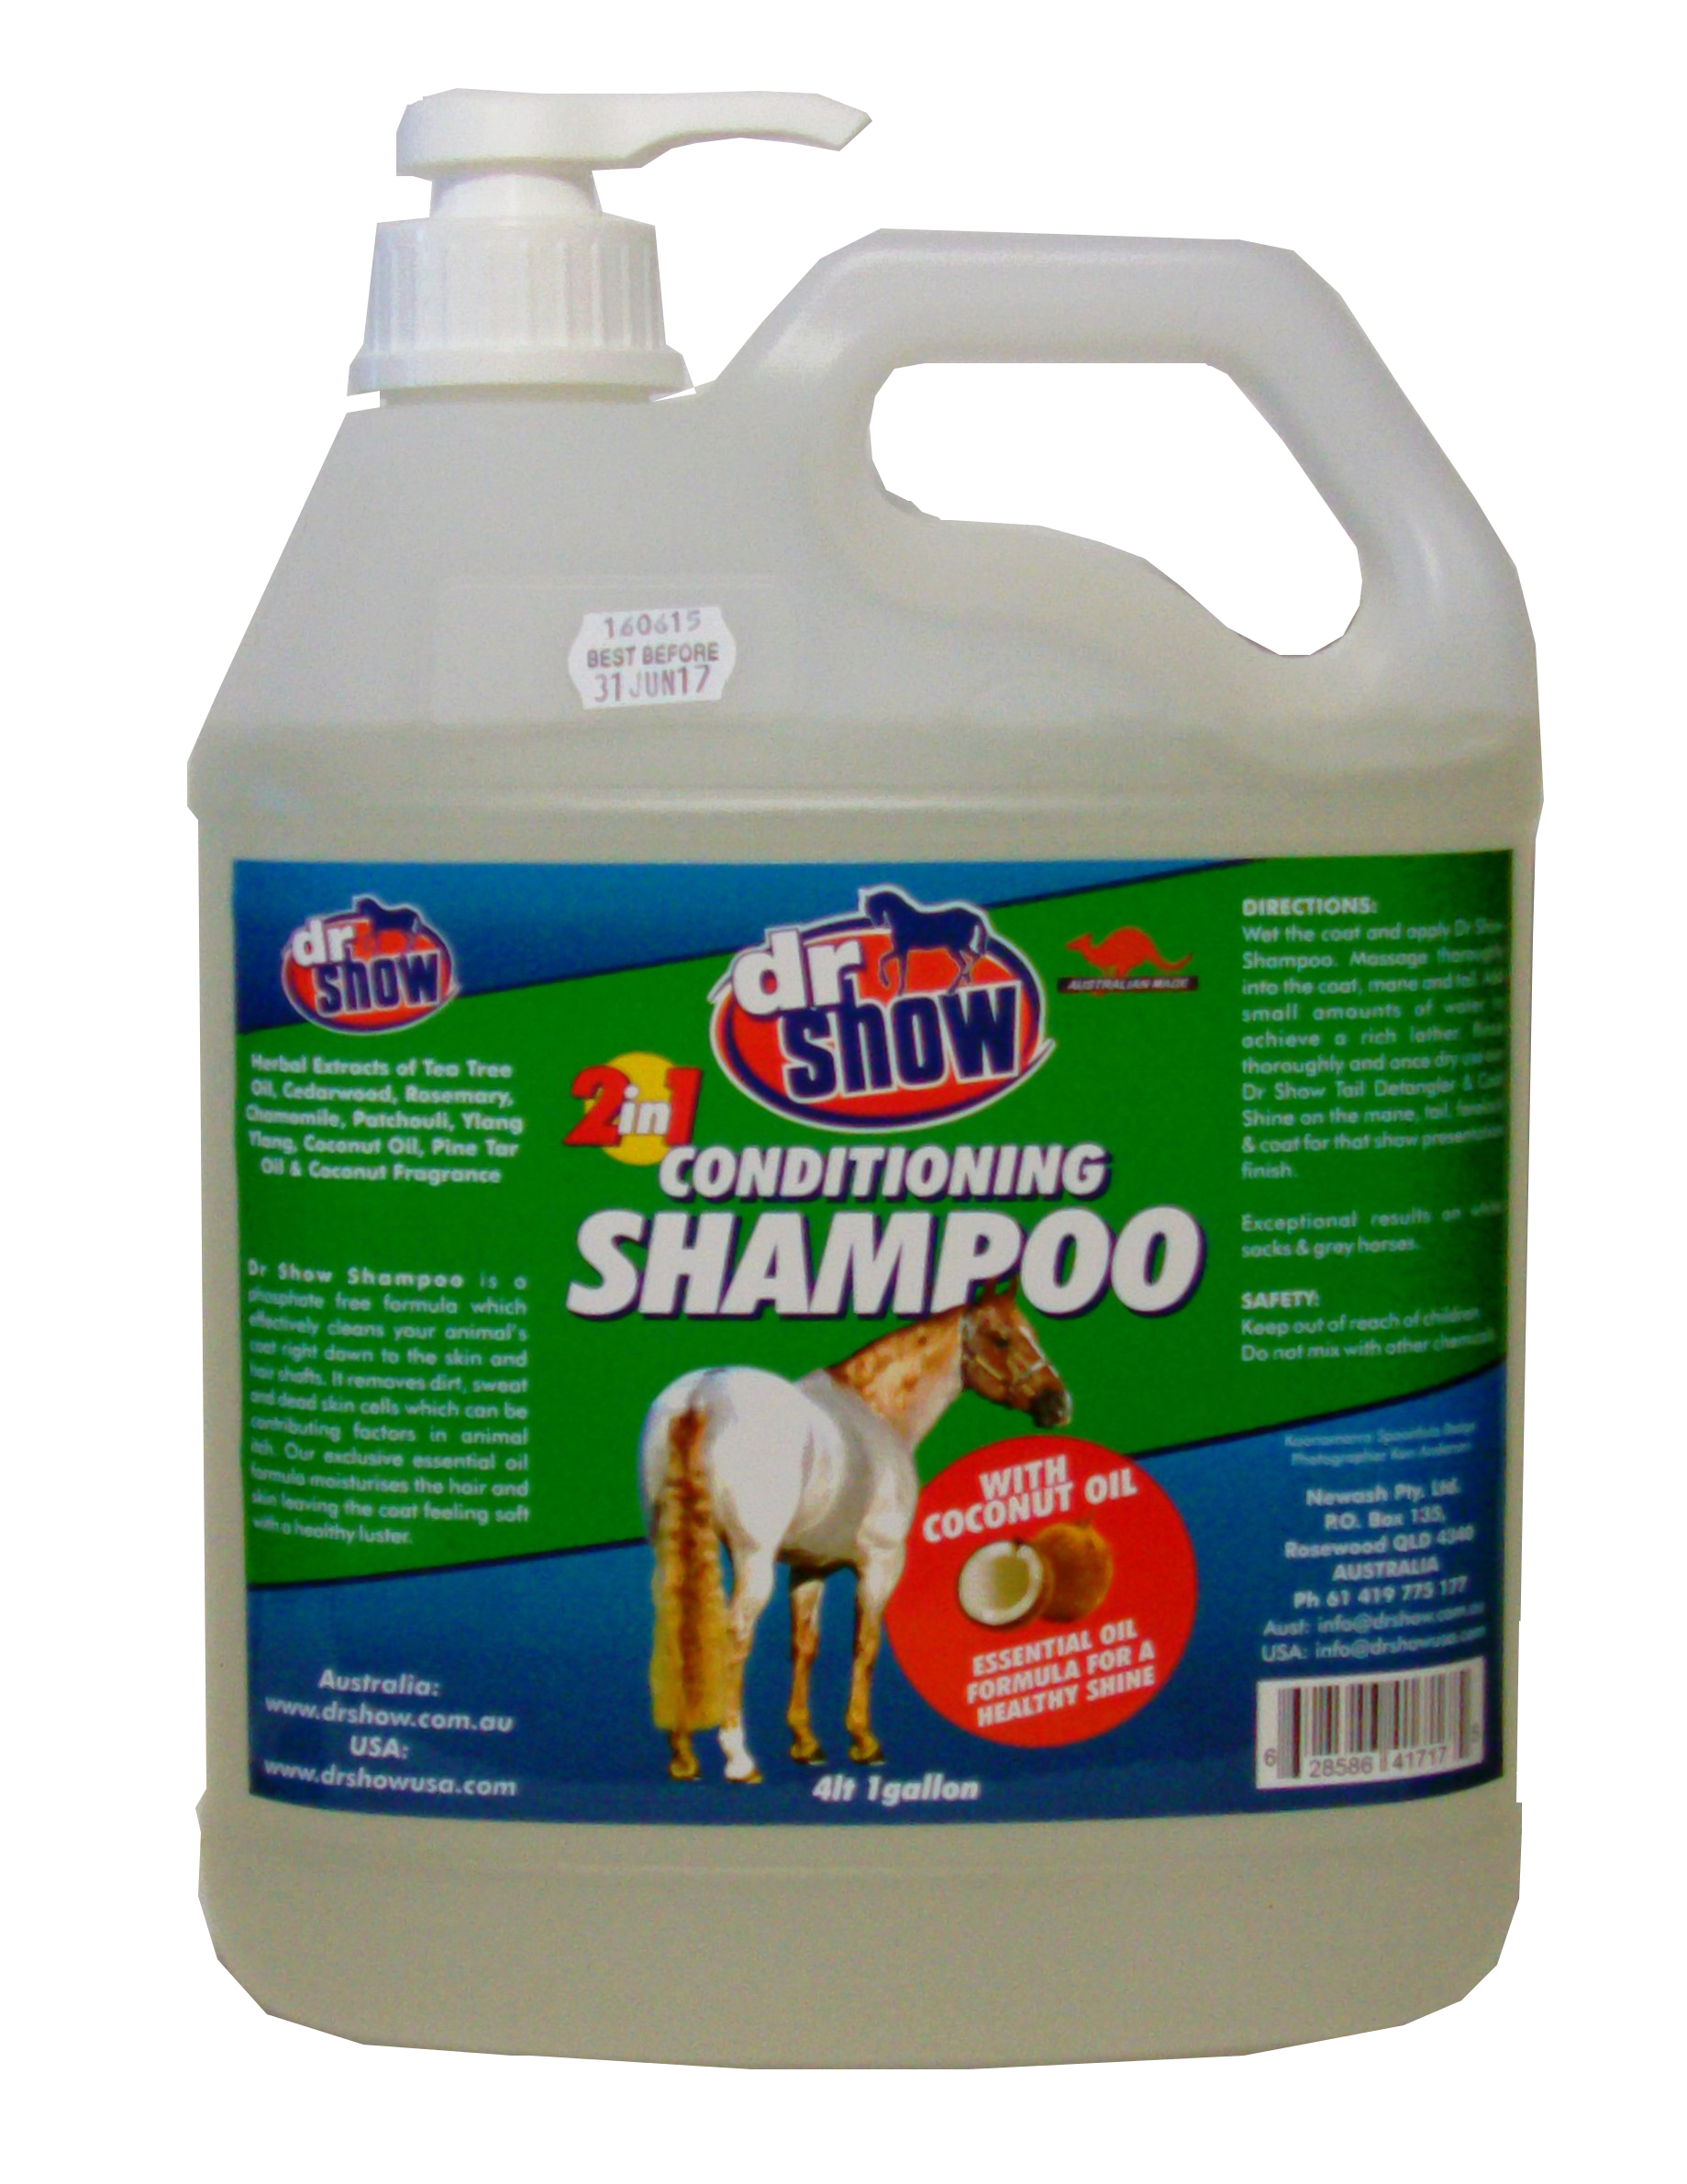 Itch Shampoo